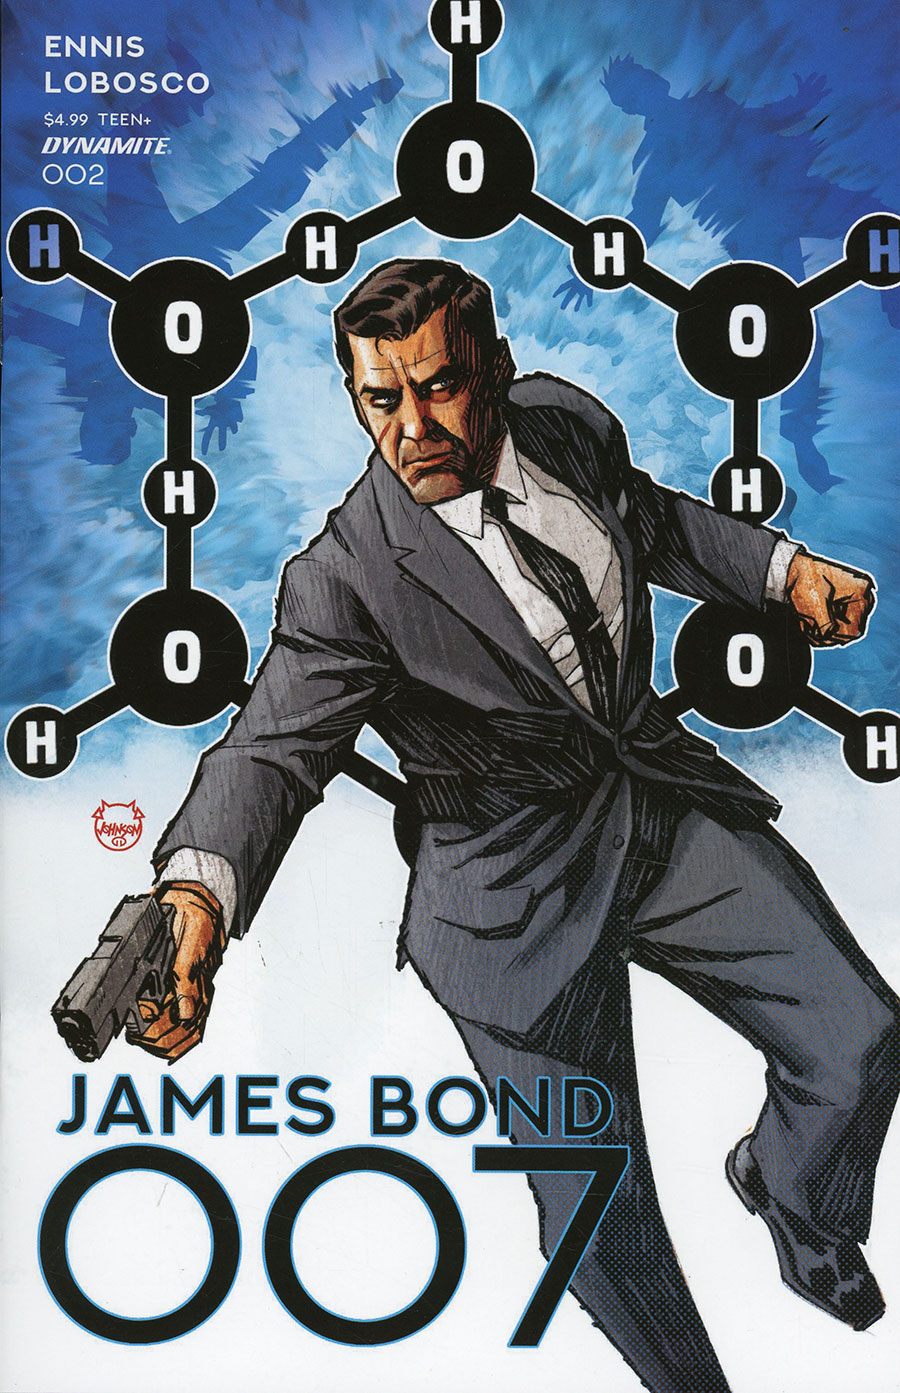 James Bond 007 Vol 2 #2